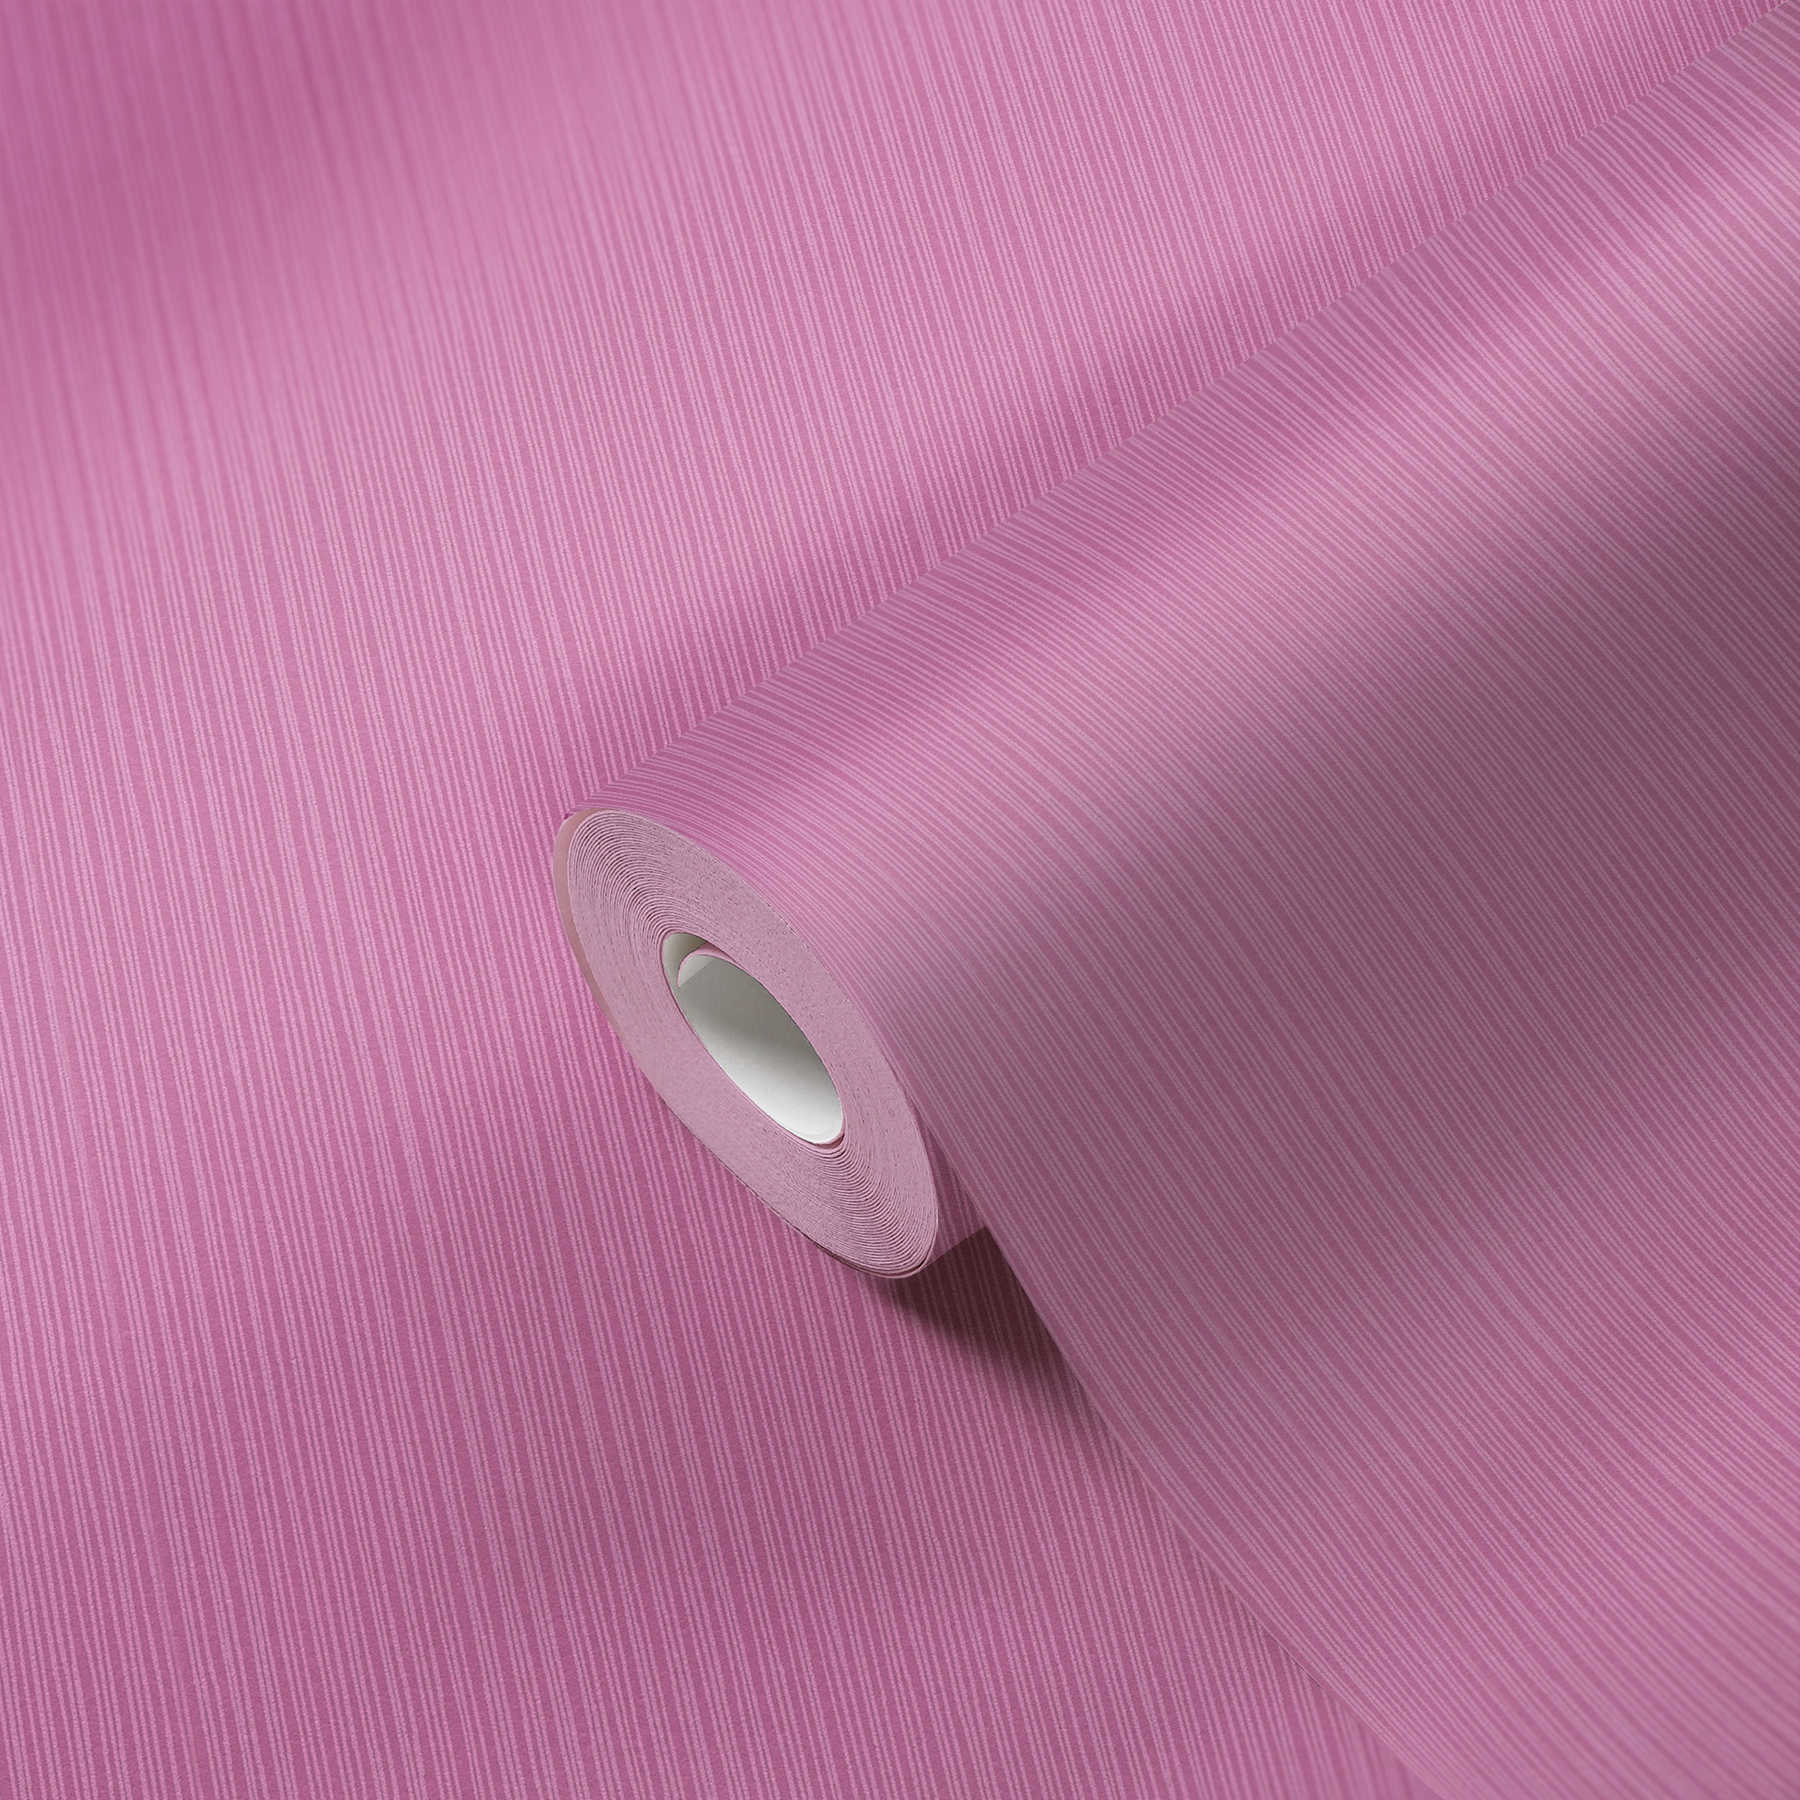             Behang violet met lijnpatroon & structuurontwerp
        